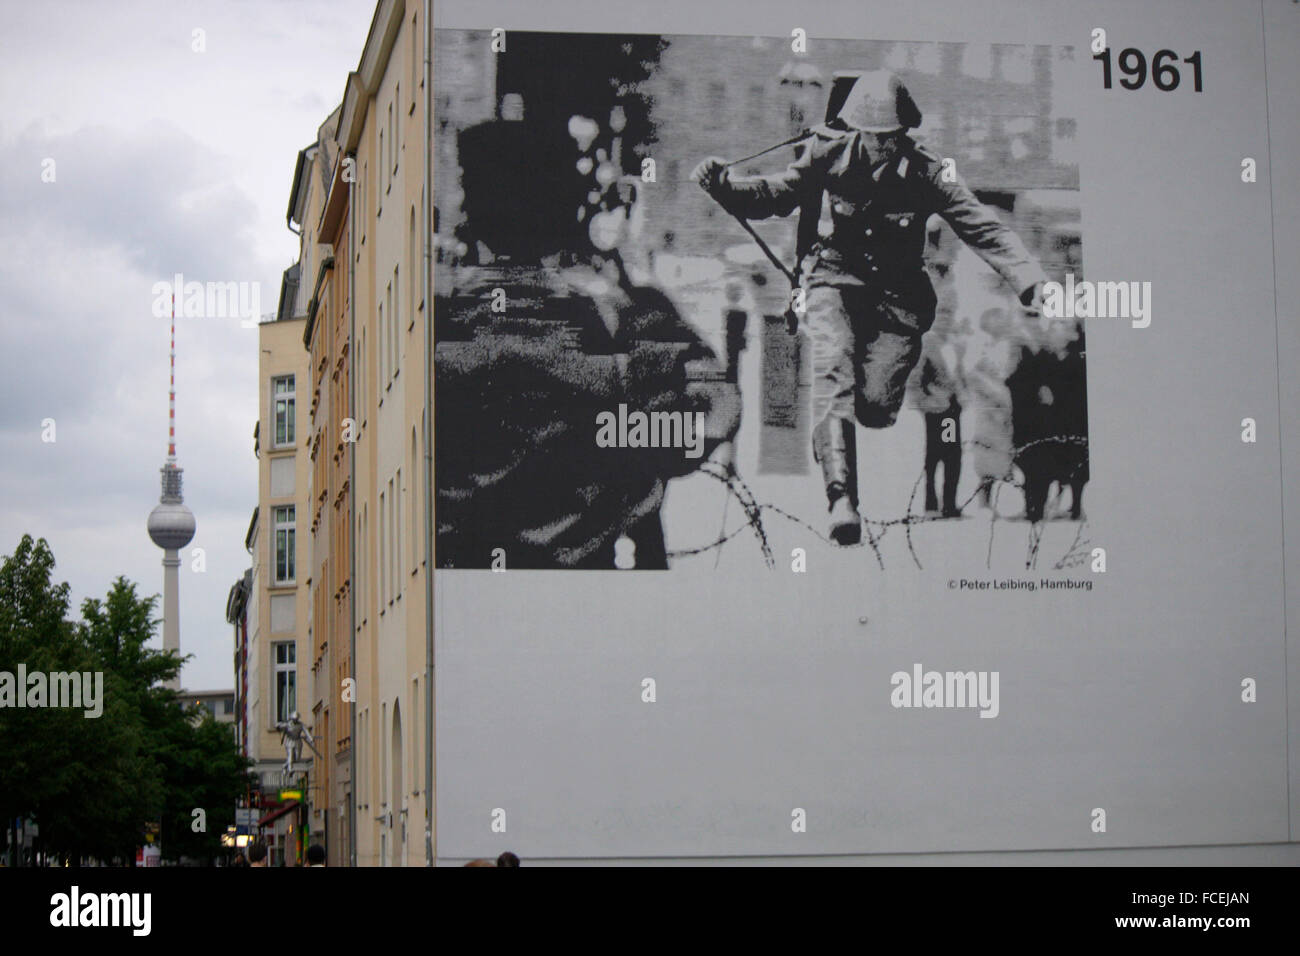 Bilder von der Berliner Mauer une Hausfassaden an der Bernauer Strasse, Berlin-Mitte. Banque D'Images